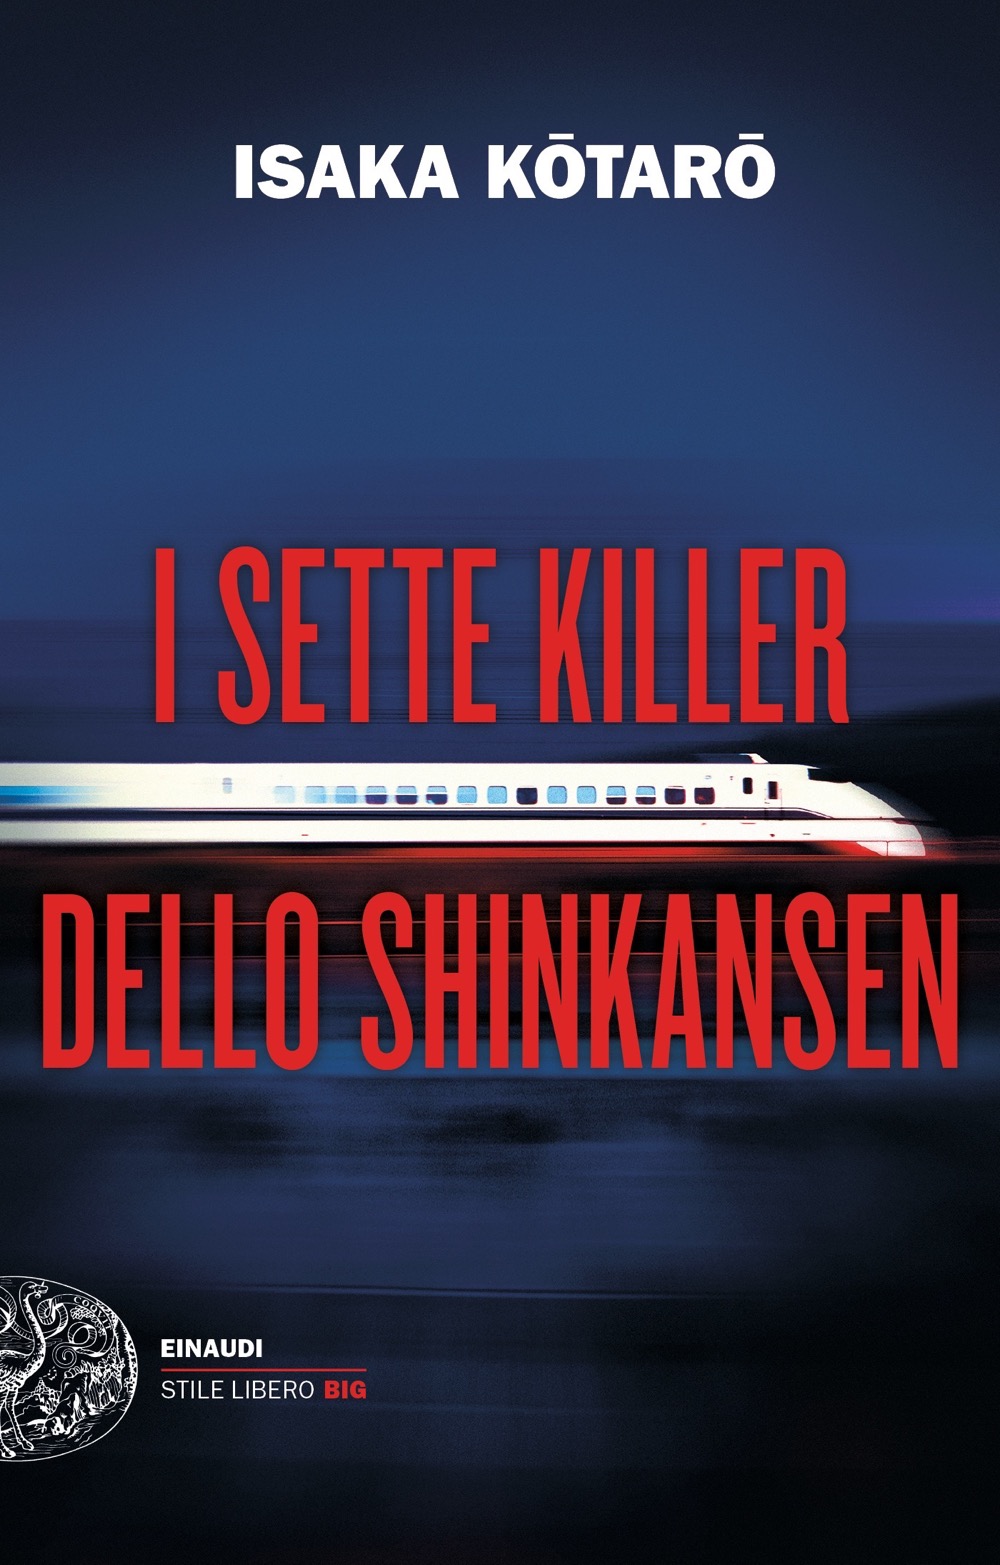 I sette killer dello Shinkansen (italiano language, Einaudi)